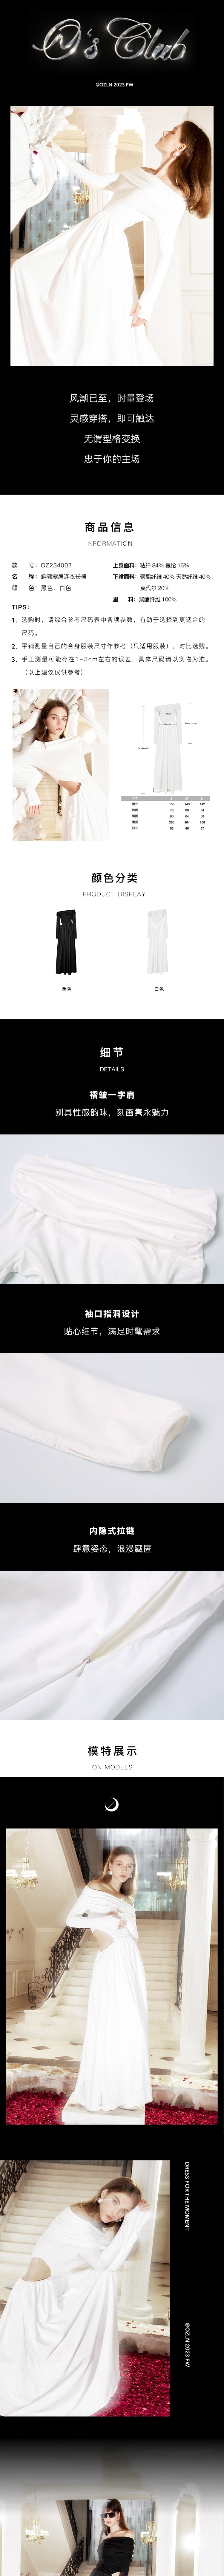 【中国直邮】OZLN 早秋新品小众设计款斜领露肩连衣长袖款长裙 白色 S